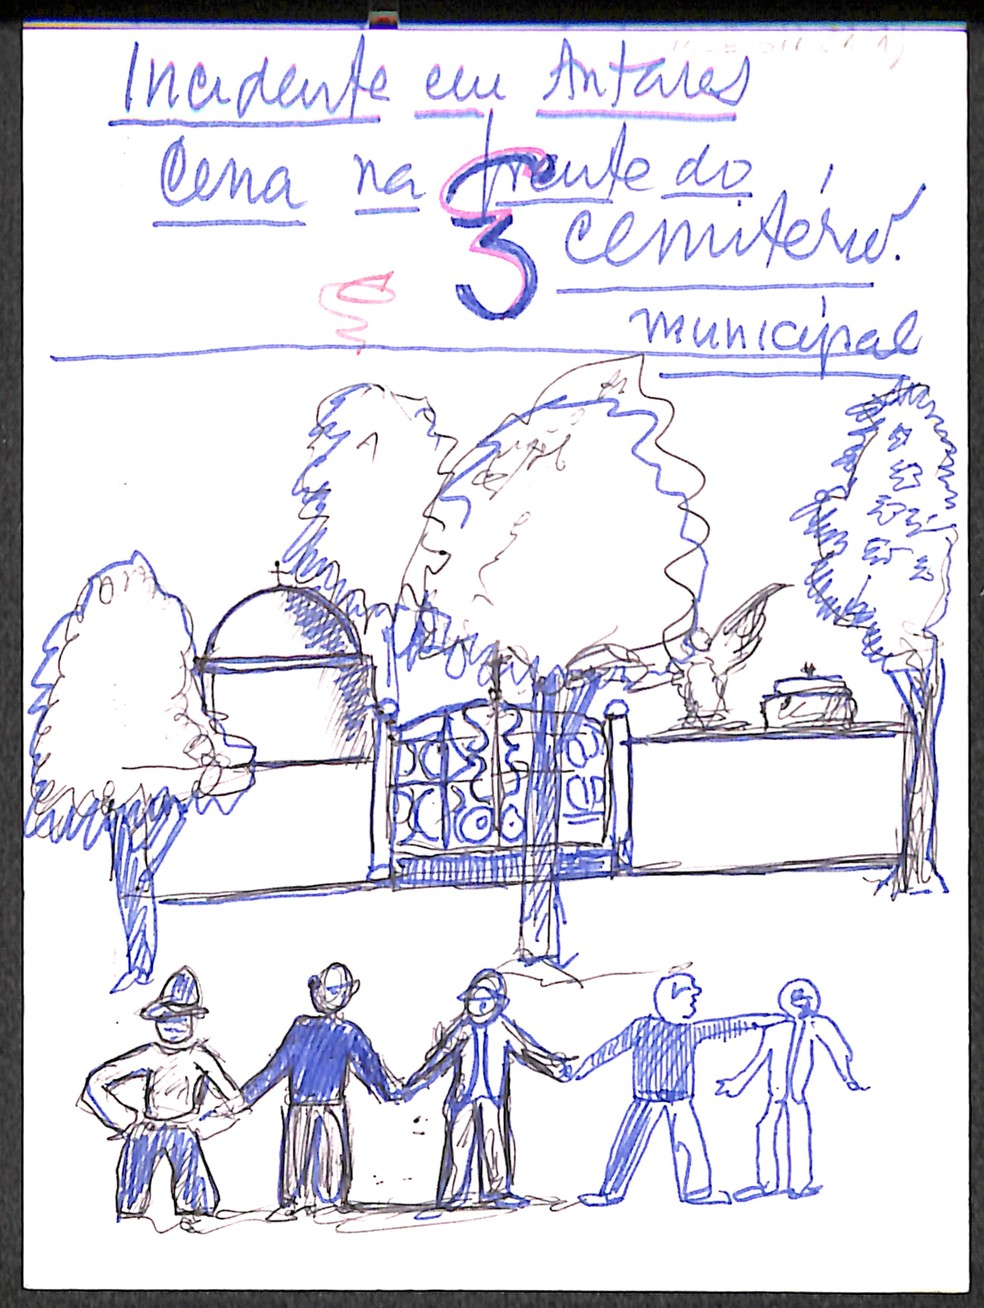 Desenho de Erico Verissimo para "Incidente em Antares" — Foto: Divulgação/ Acervo IEB